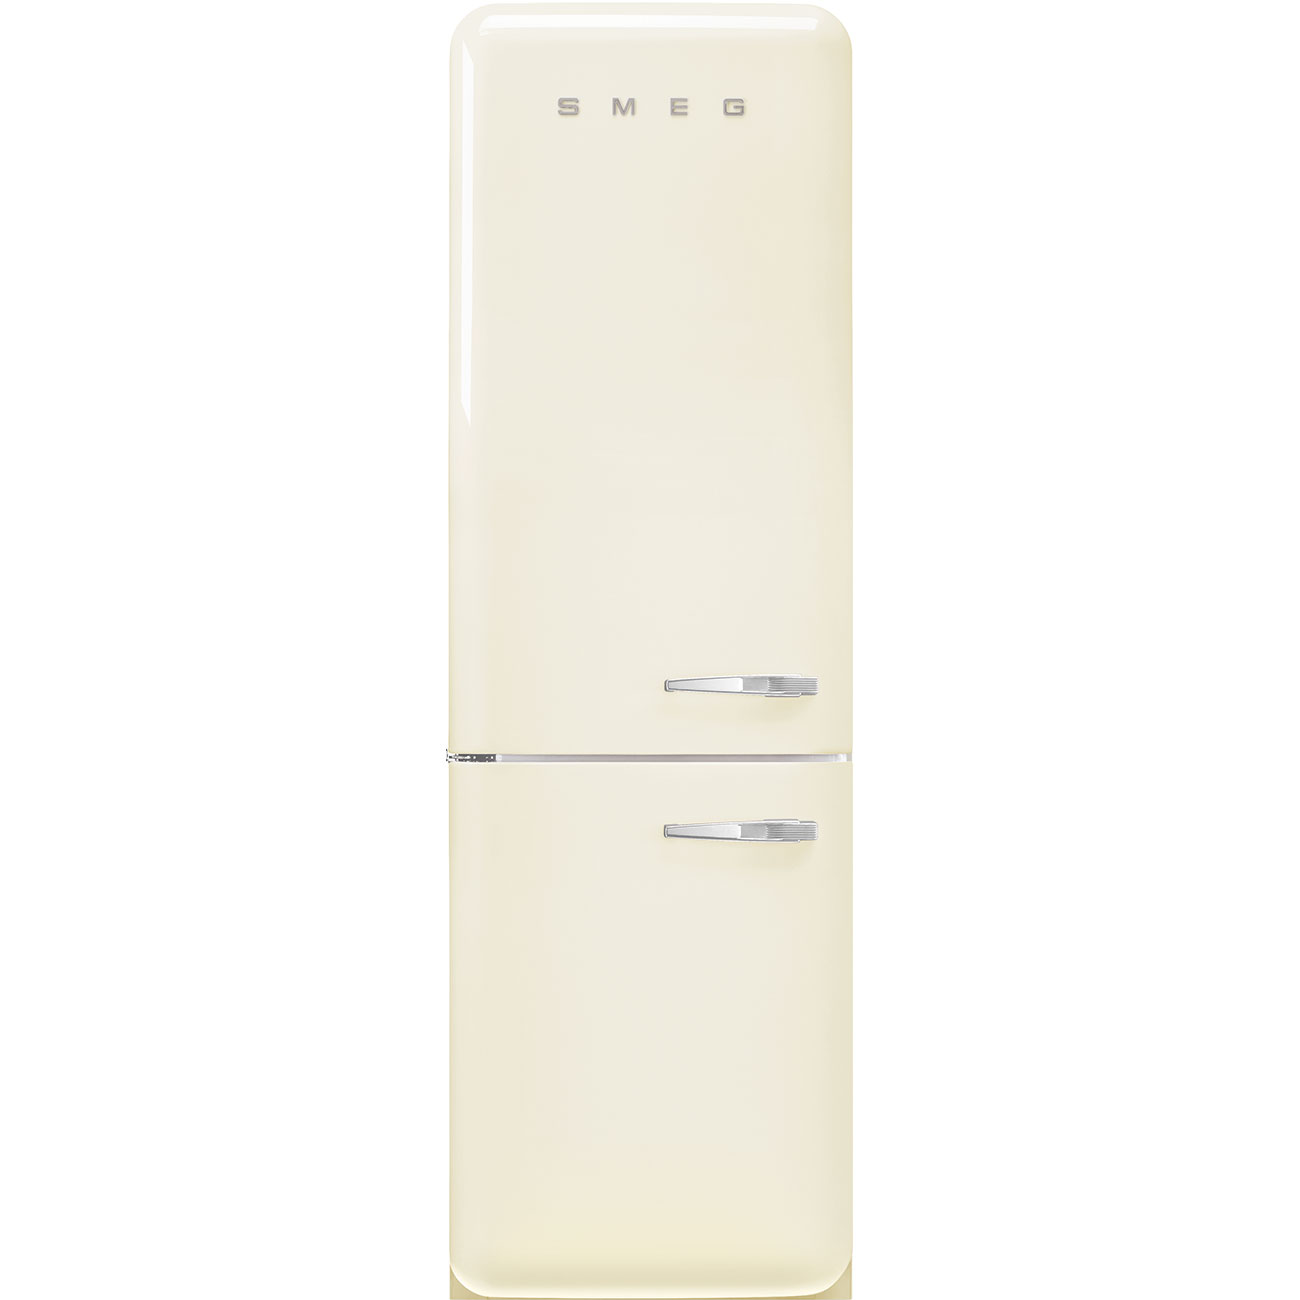 Холодильник двухкамерный купить в москве цена. Холодильник Smeg fab50rcrb5. Холодильник Smeg fab38lcr5. Холодильники Smeg fab30rcr3. Холодильники Smeg fab30lpg3.